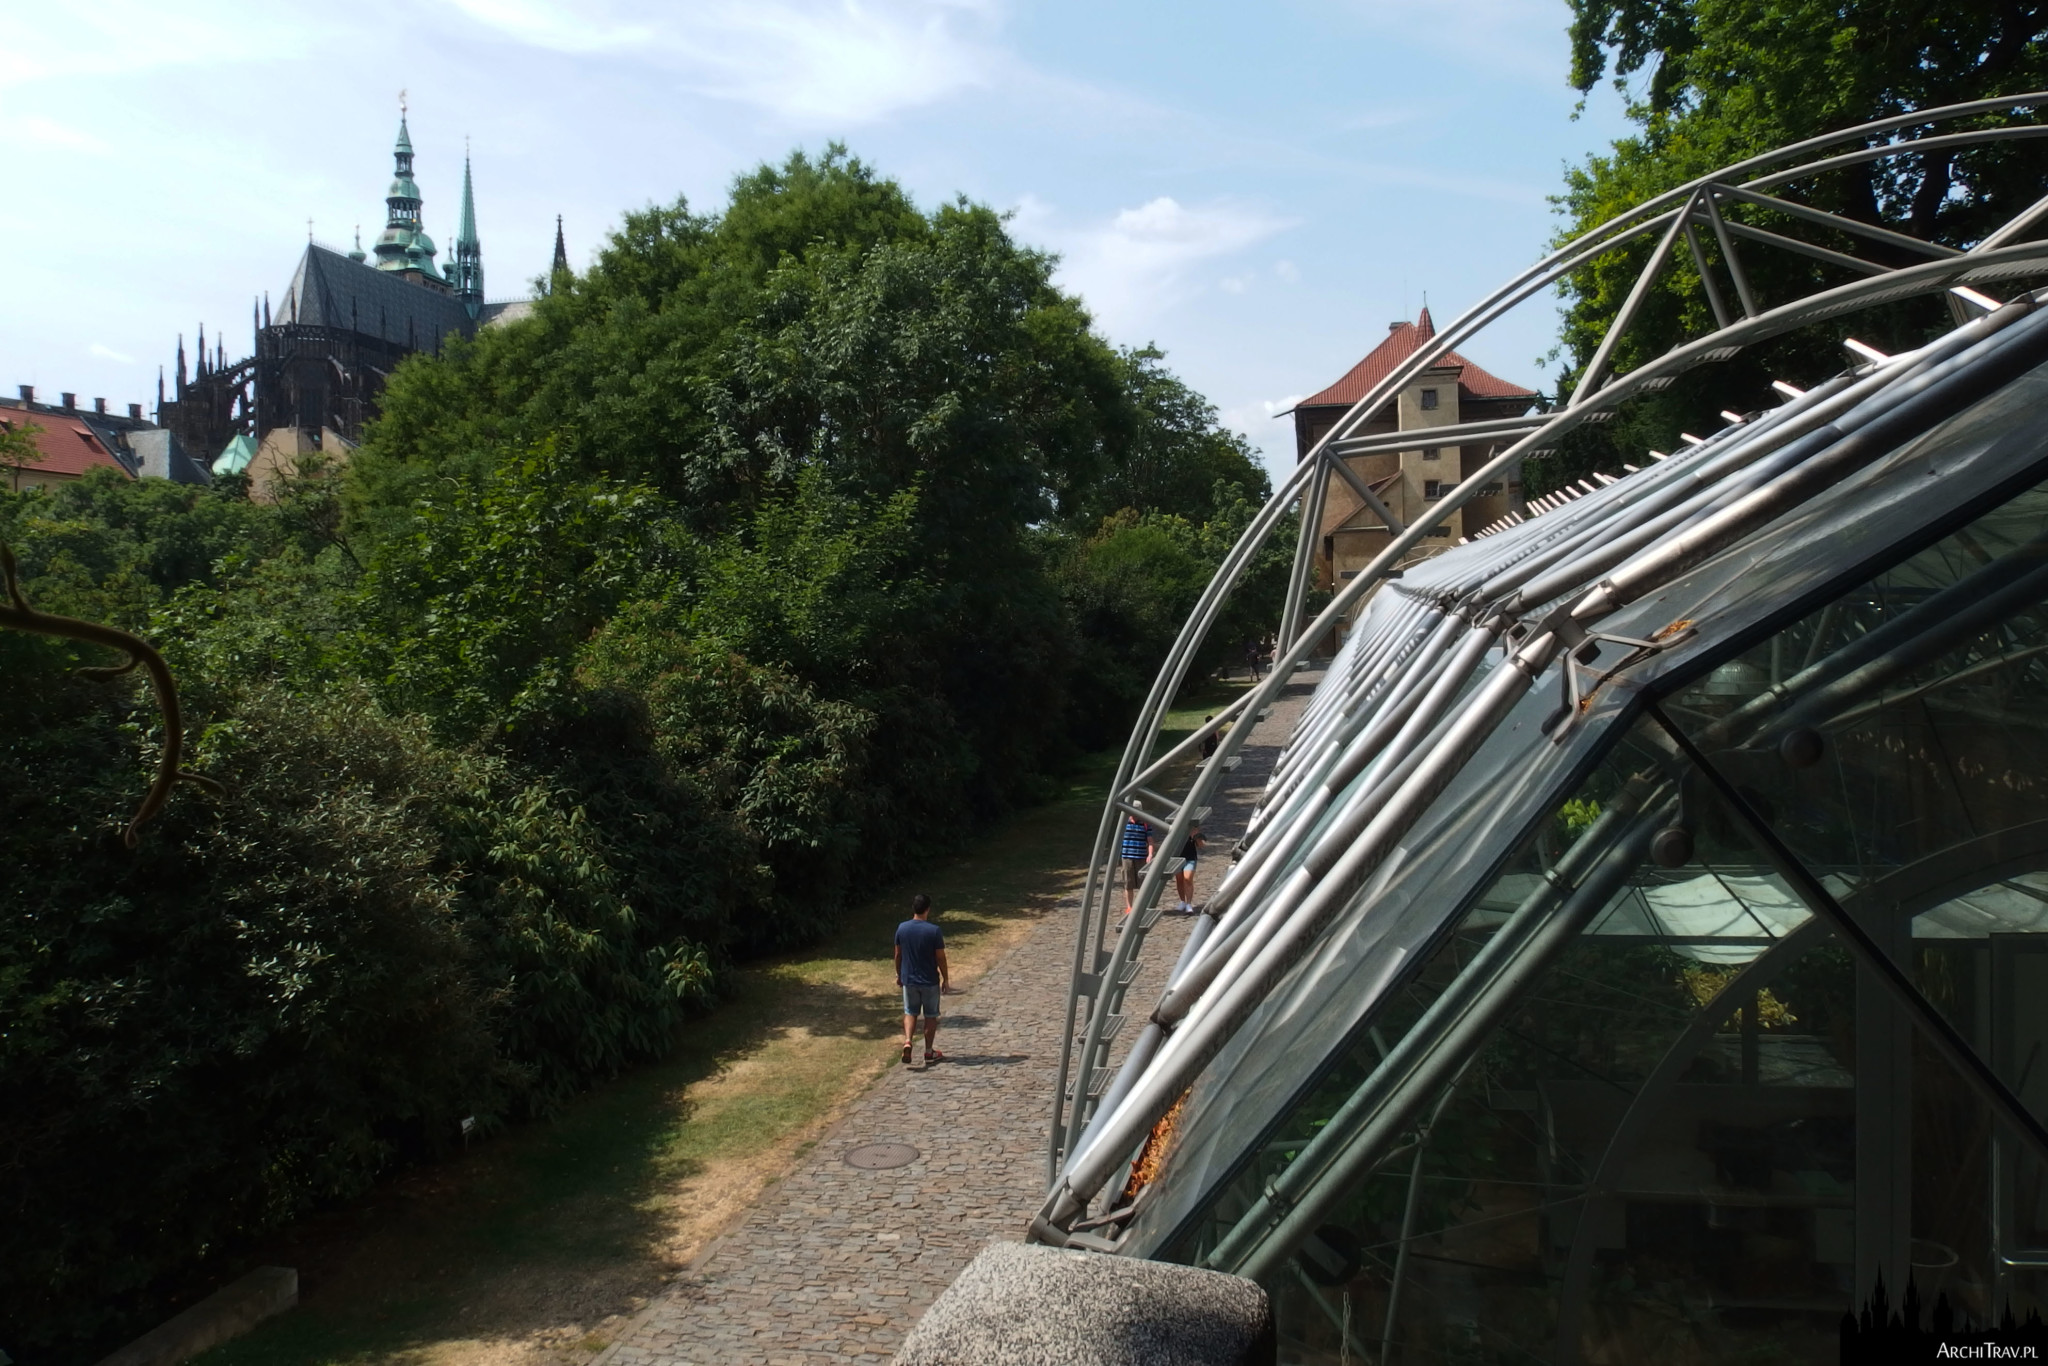 po prawej na pierwszym planie kawałek Oranżerii (Ogrody Królewskie w Pradze), nowoczesnego budynku ze stalowymi i szklanymi elementami, w dole ścieżka, obok niej bujna zieleń, w oddali strzelista sylweta katedry św. Wita